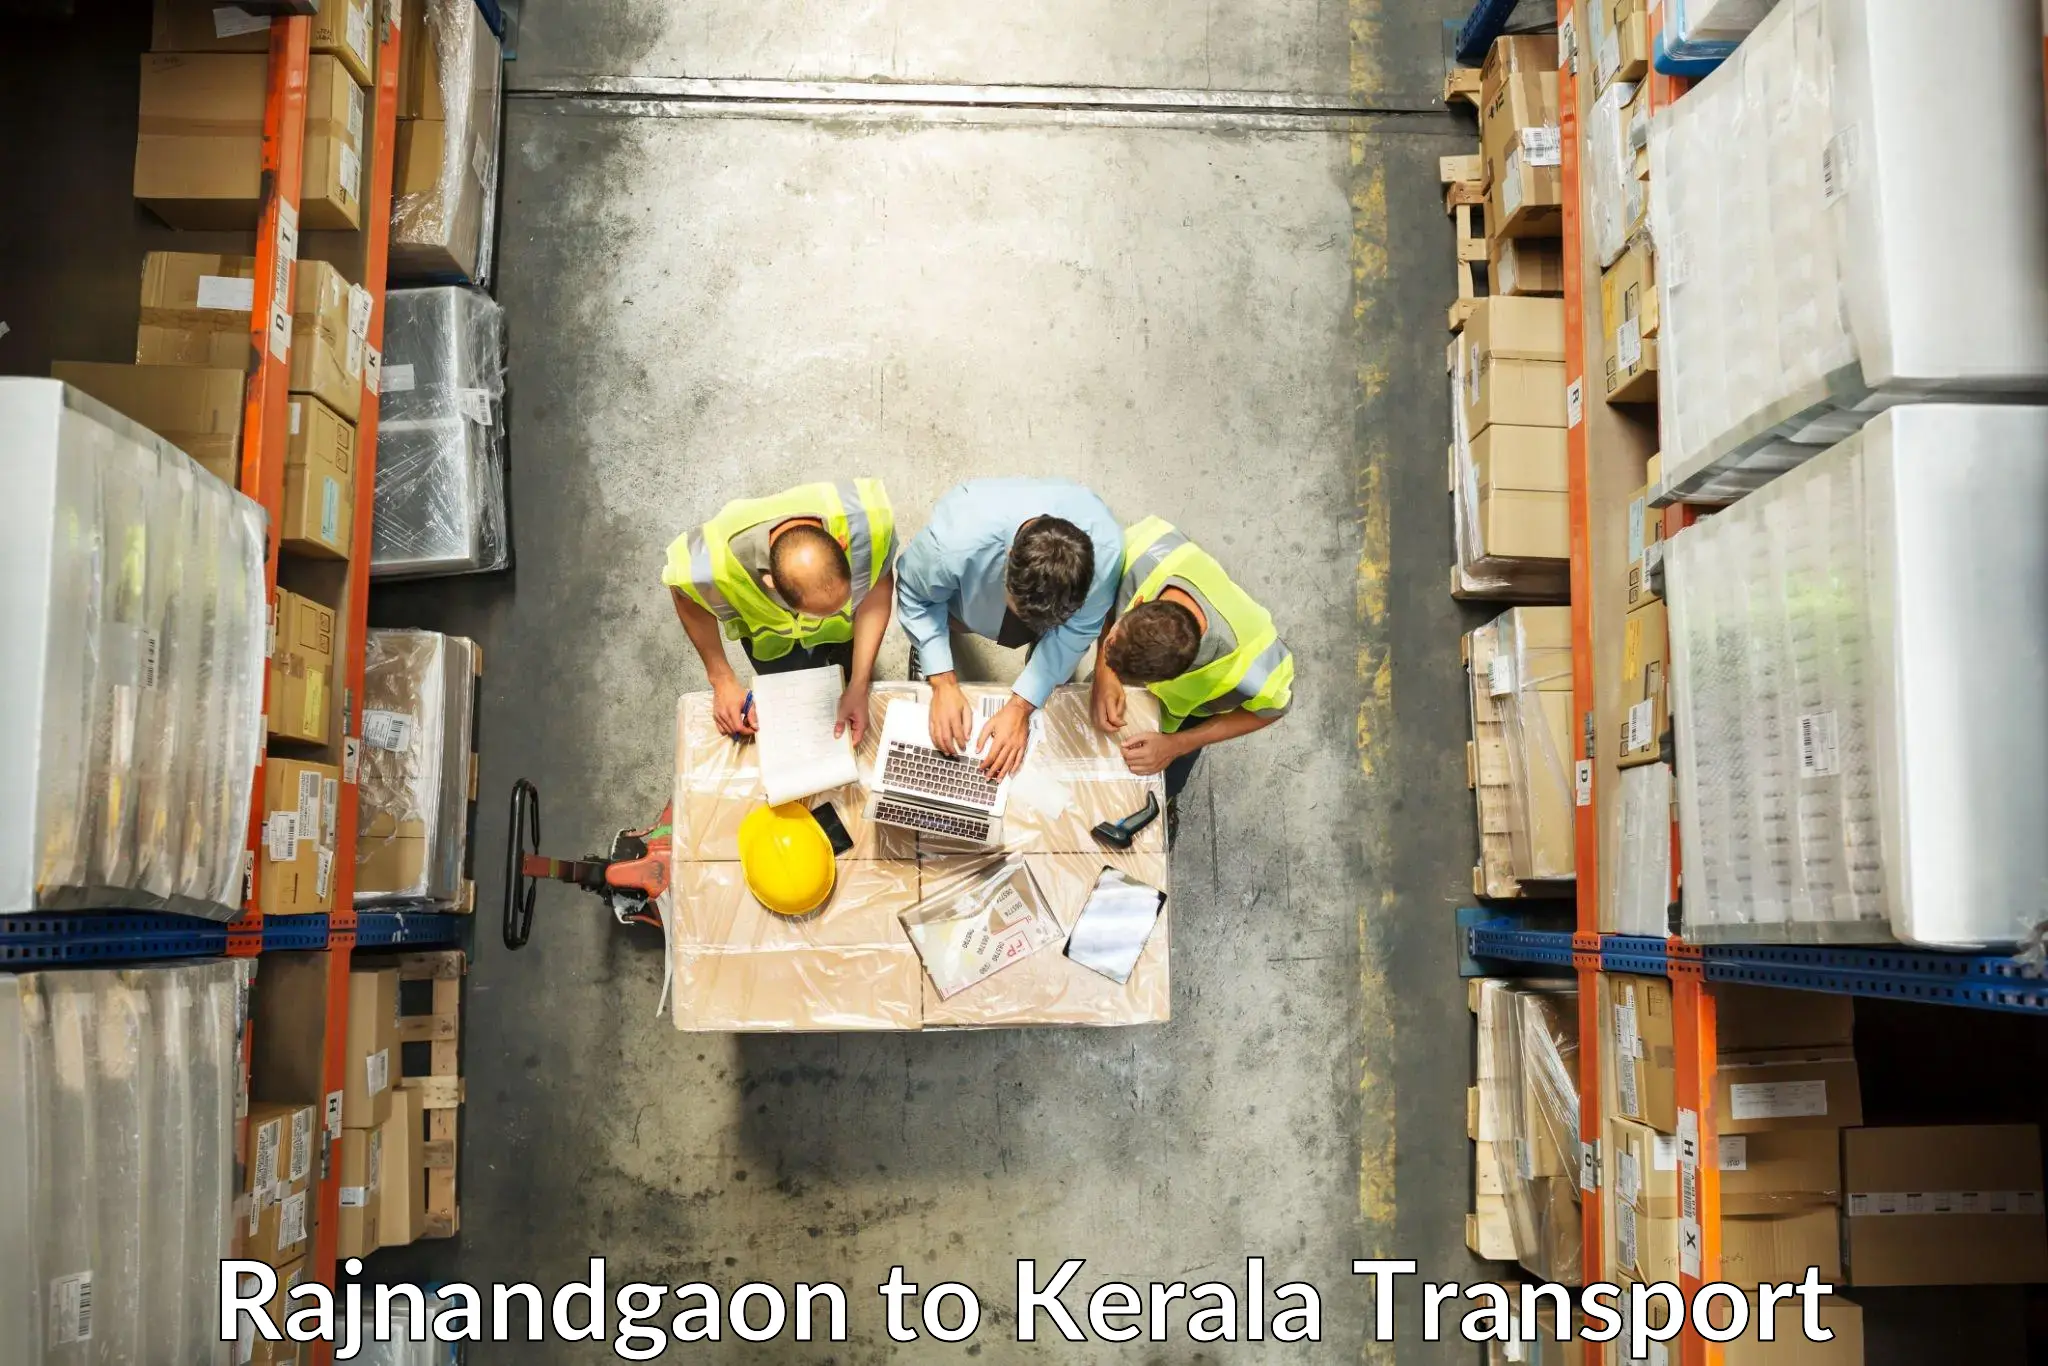 Intercity goods transport Rajnandgaon to Kozhikode